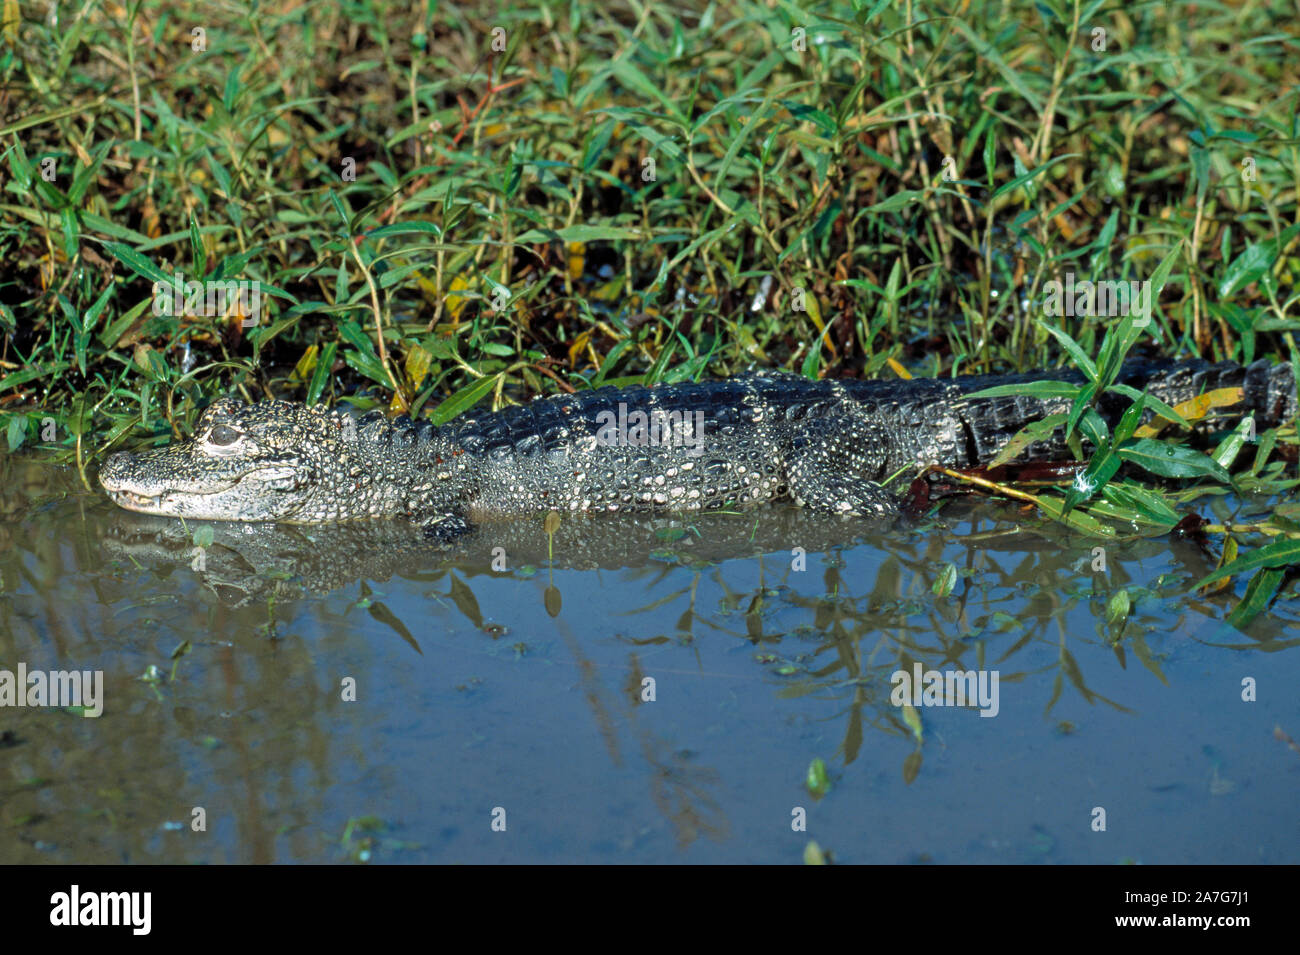 Alligator sinensis alligator chinois, dans l'eau, par la végétation. Banque D'Images